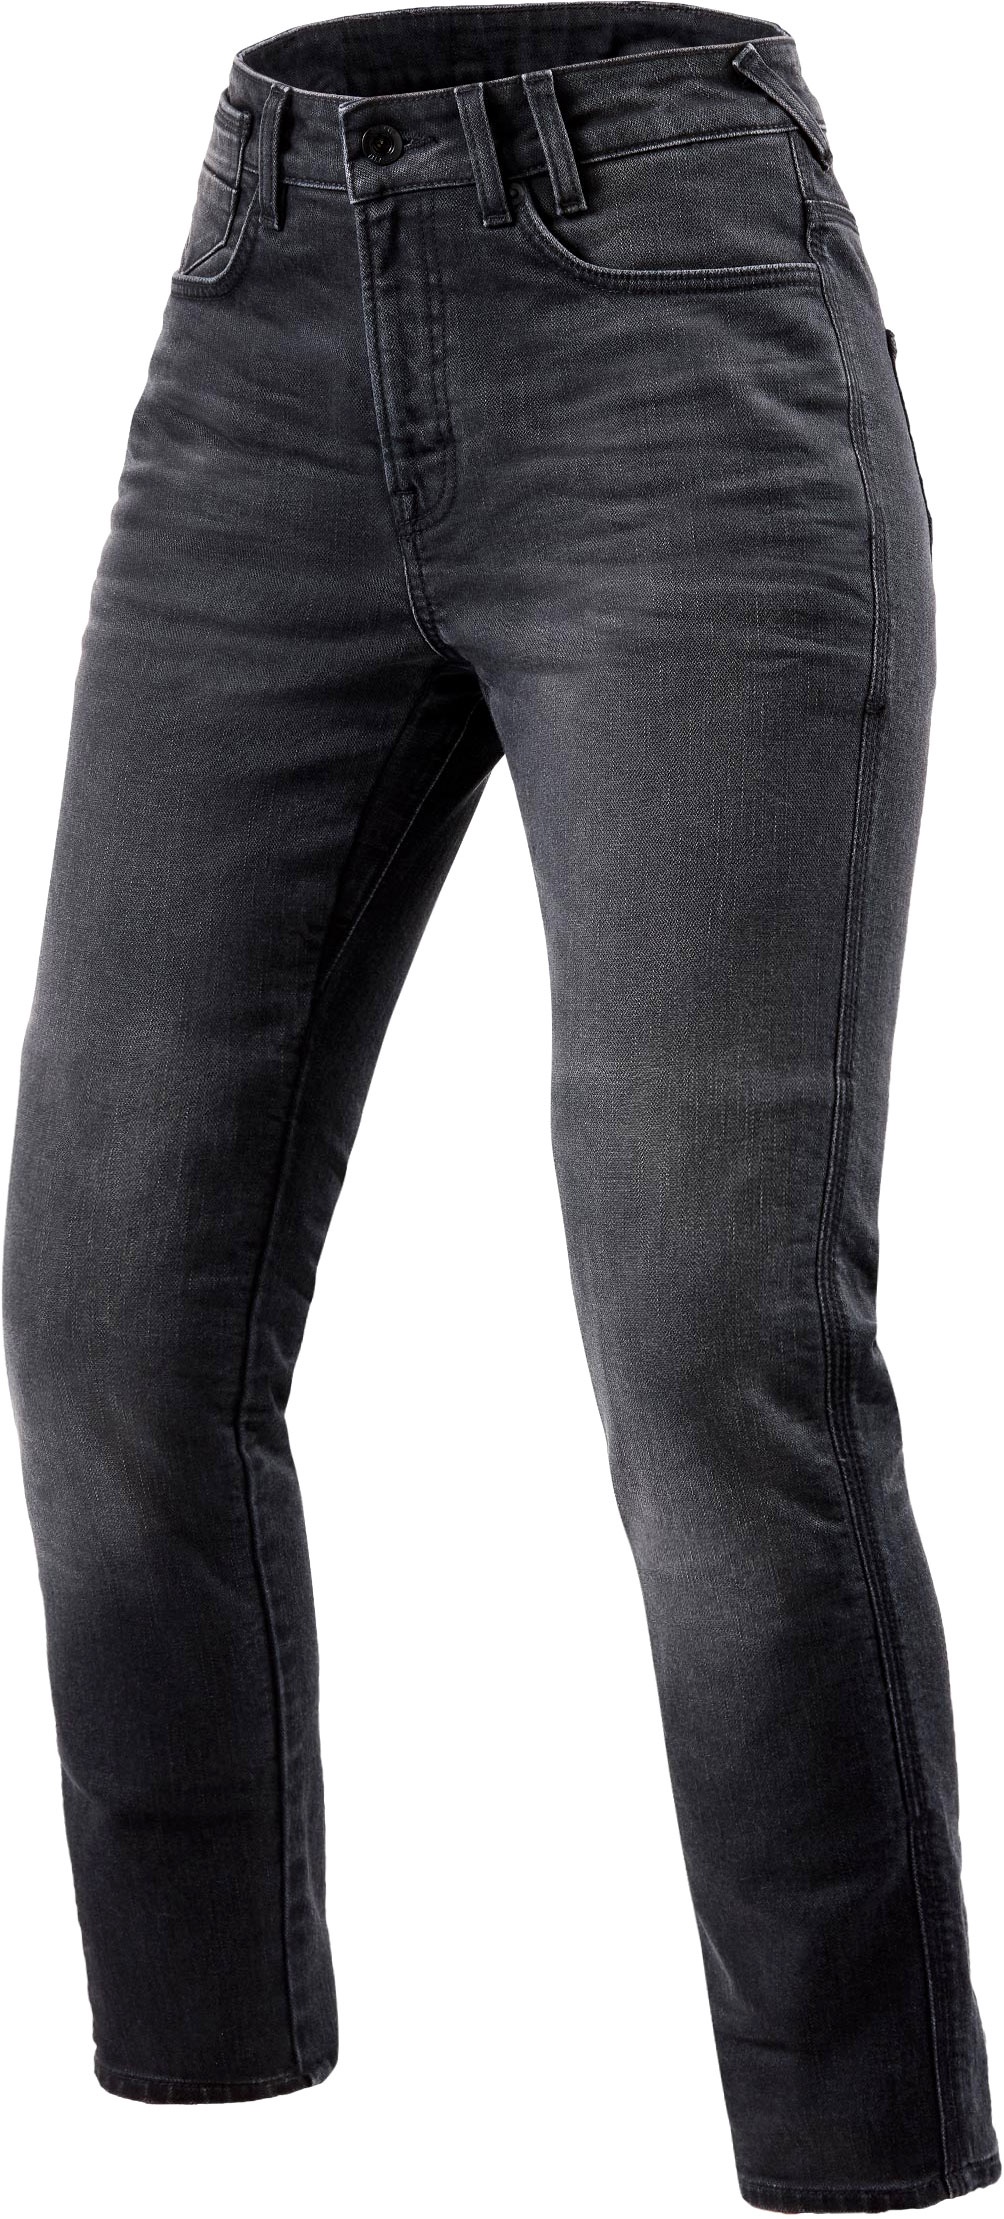 Revit Victoria 2, jeans femmes - Gris - W36/L32